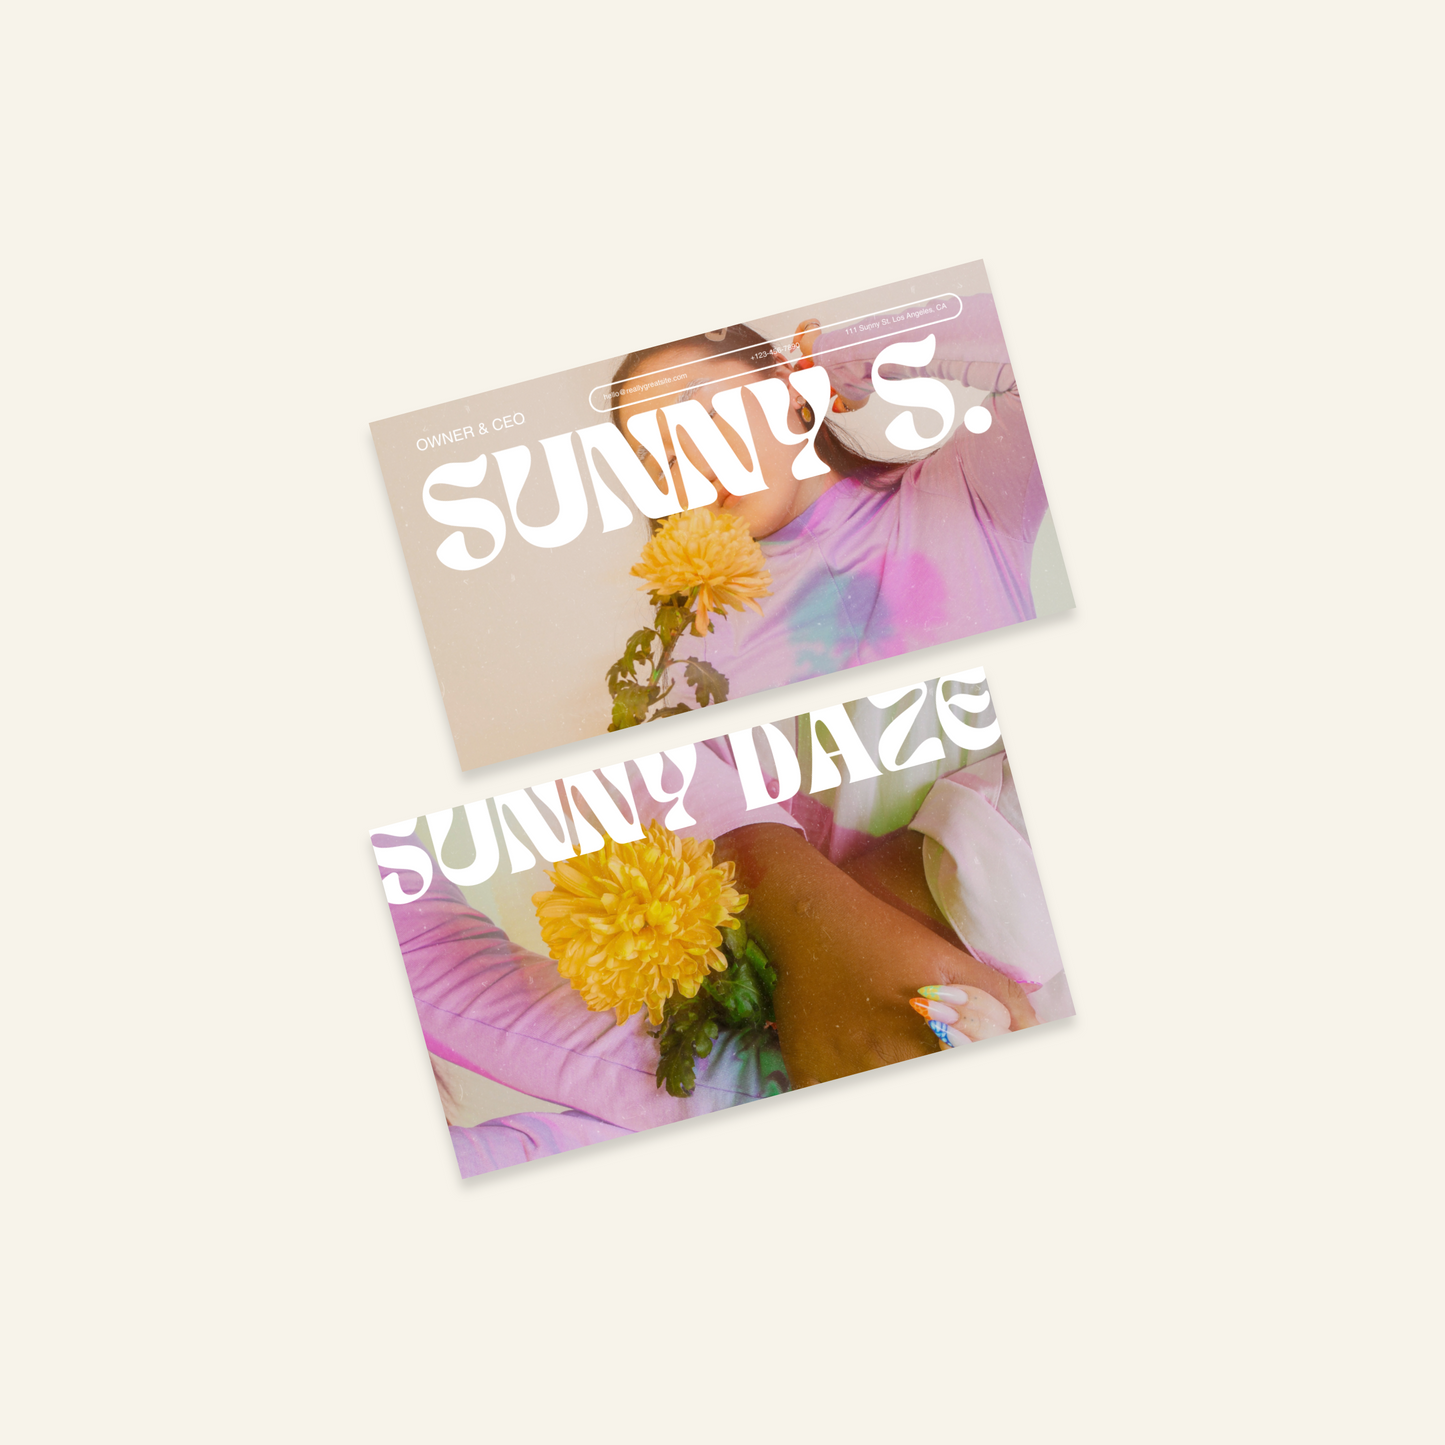 Sunny Daze - Stationary Kit Template